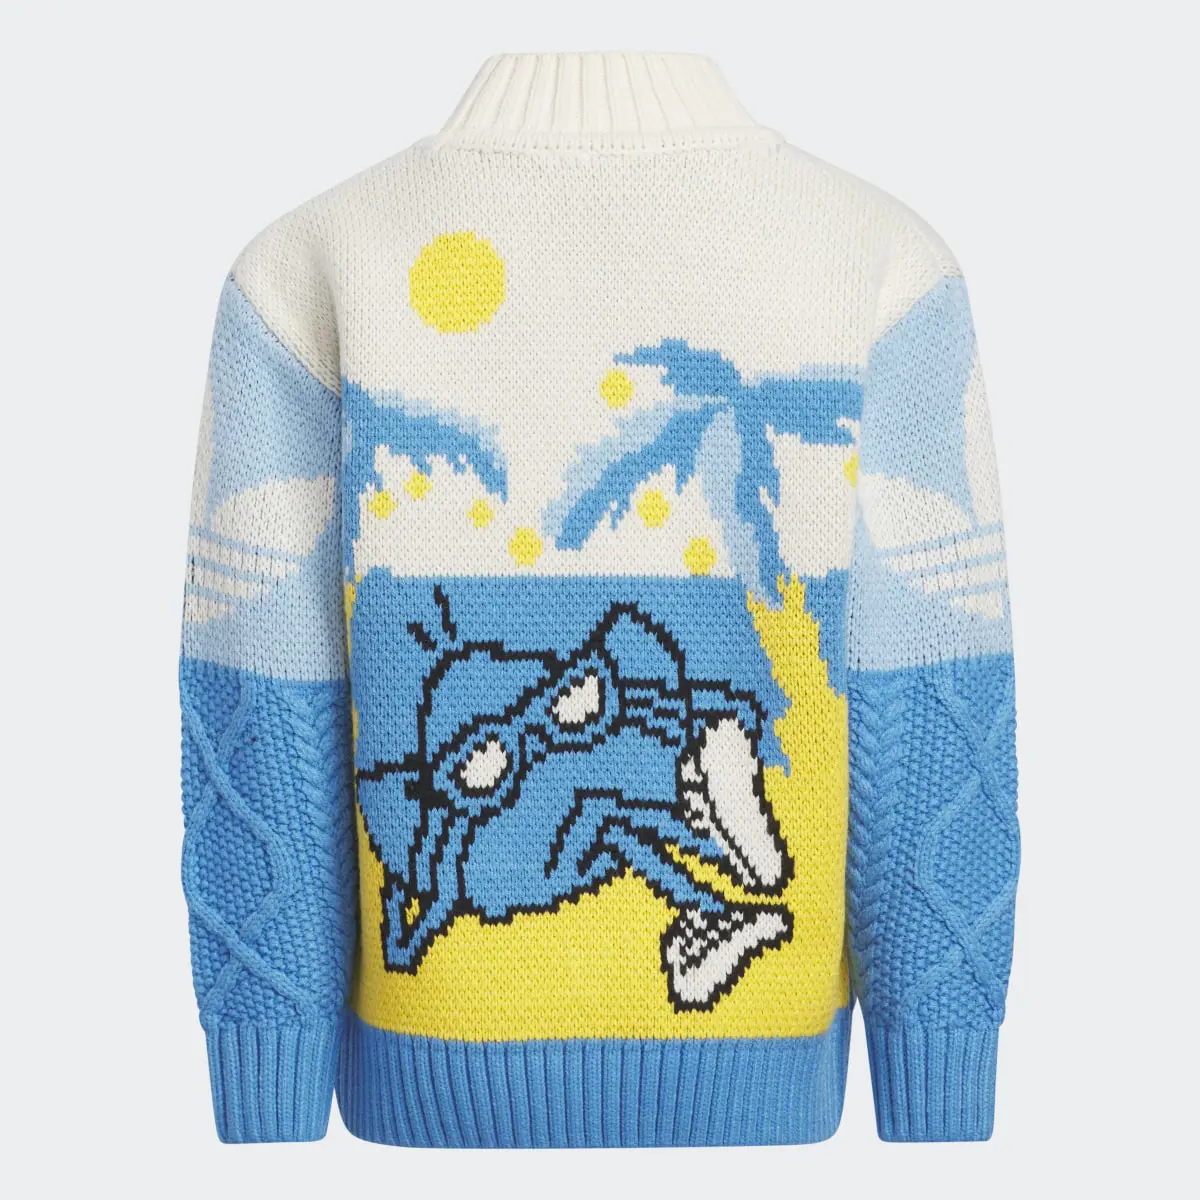 Adidas Xmas Sweater. 2